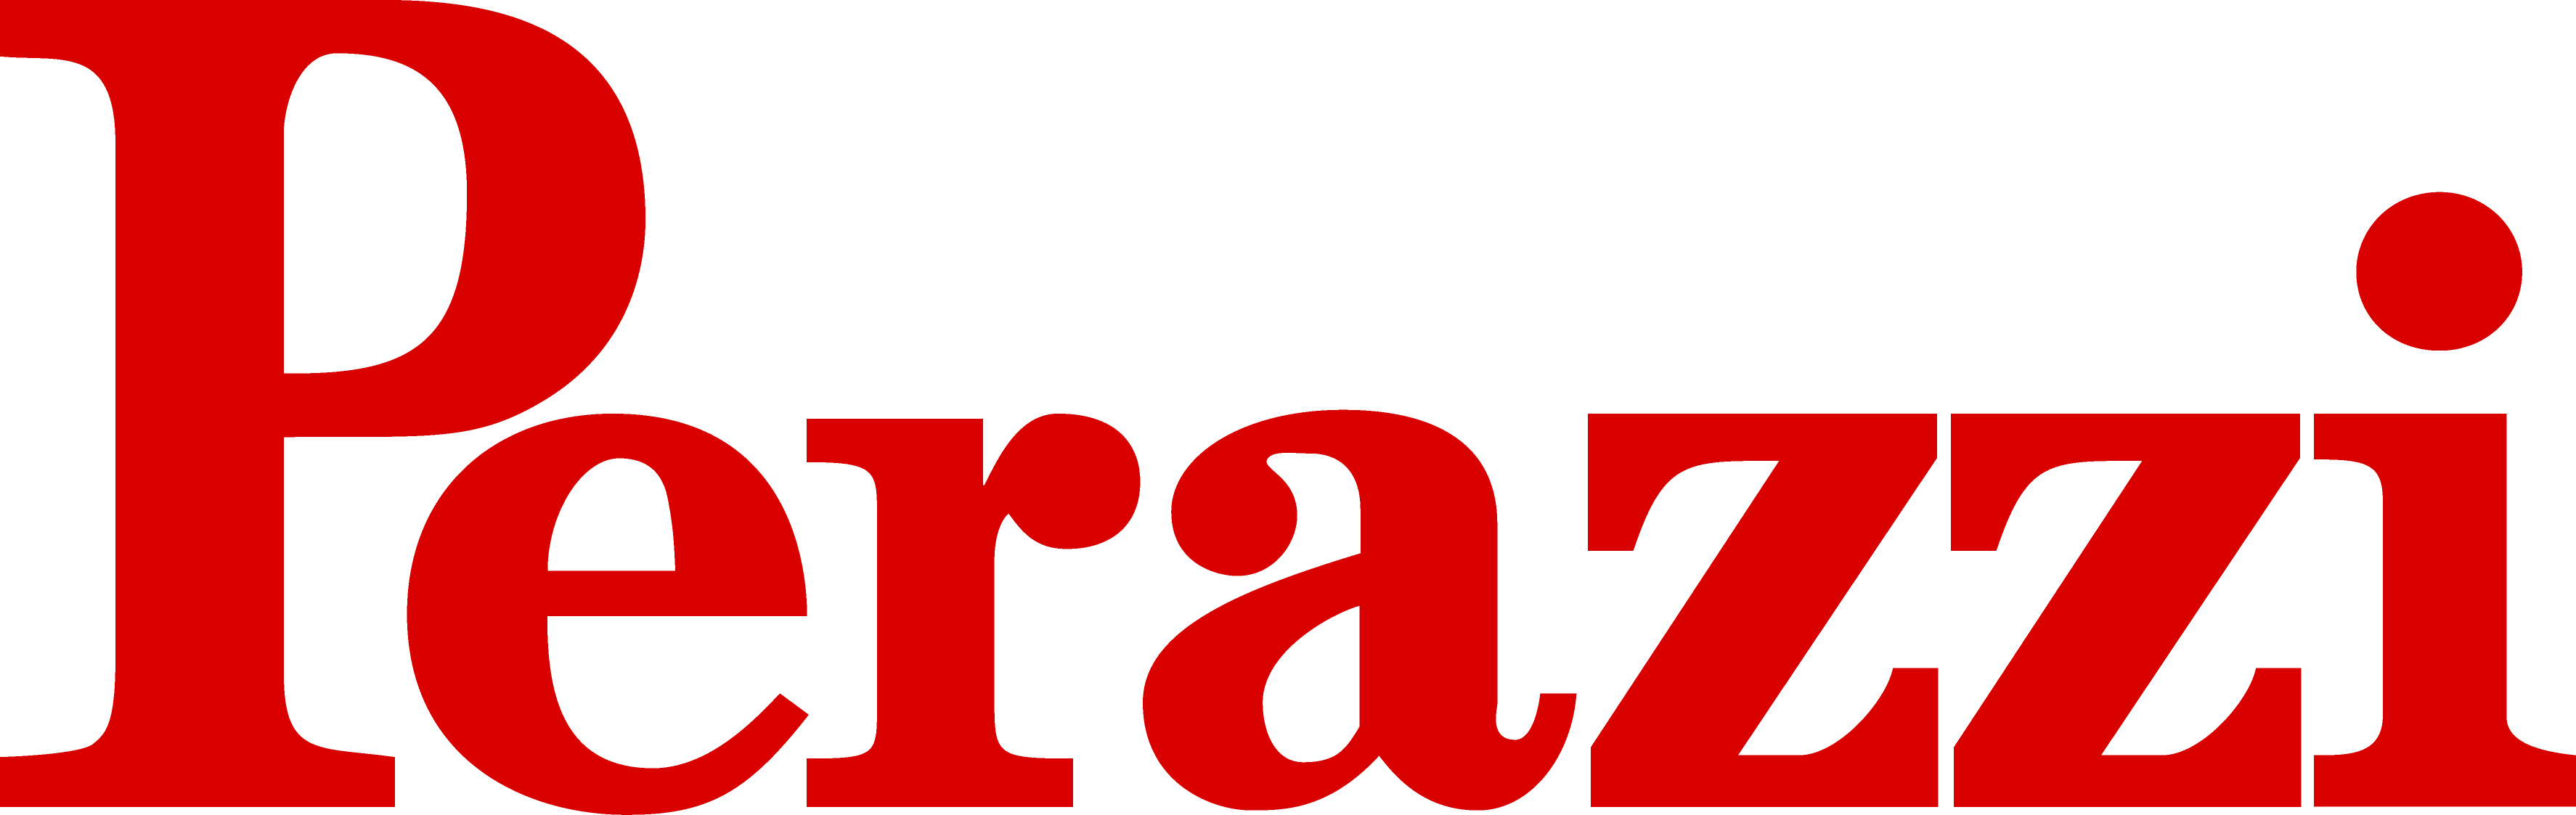 our-friends-perazzi-logo